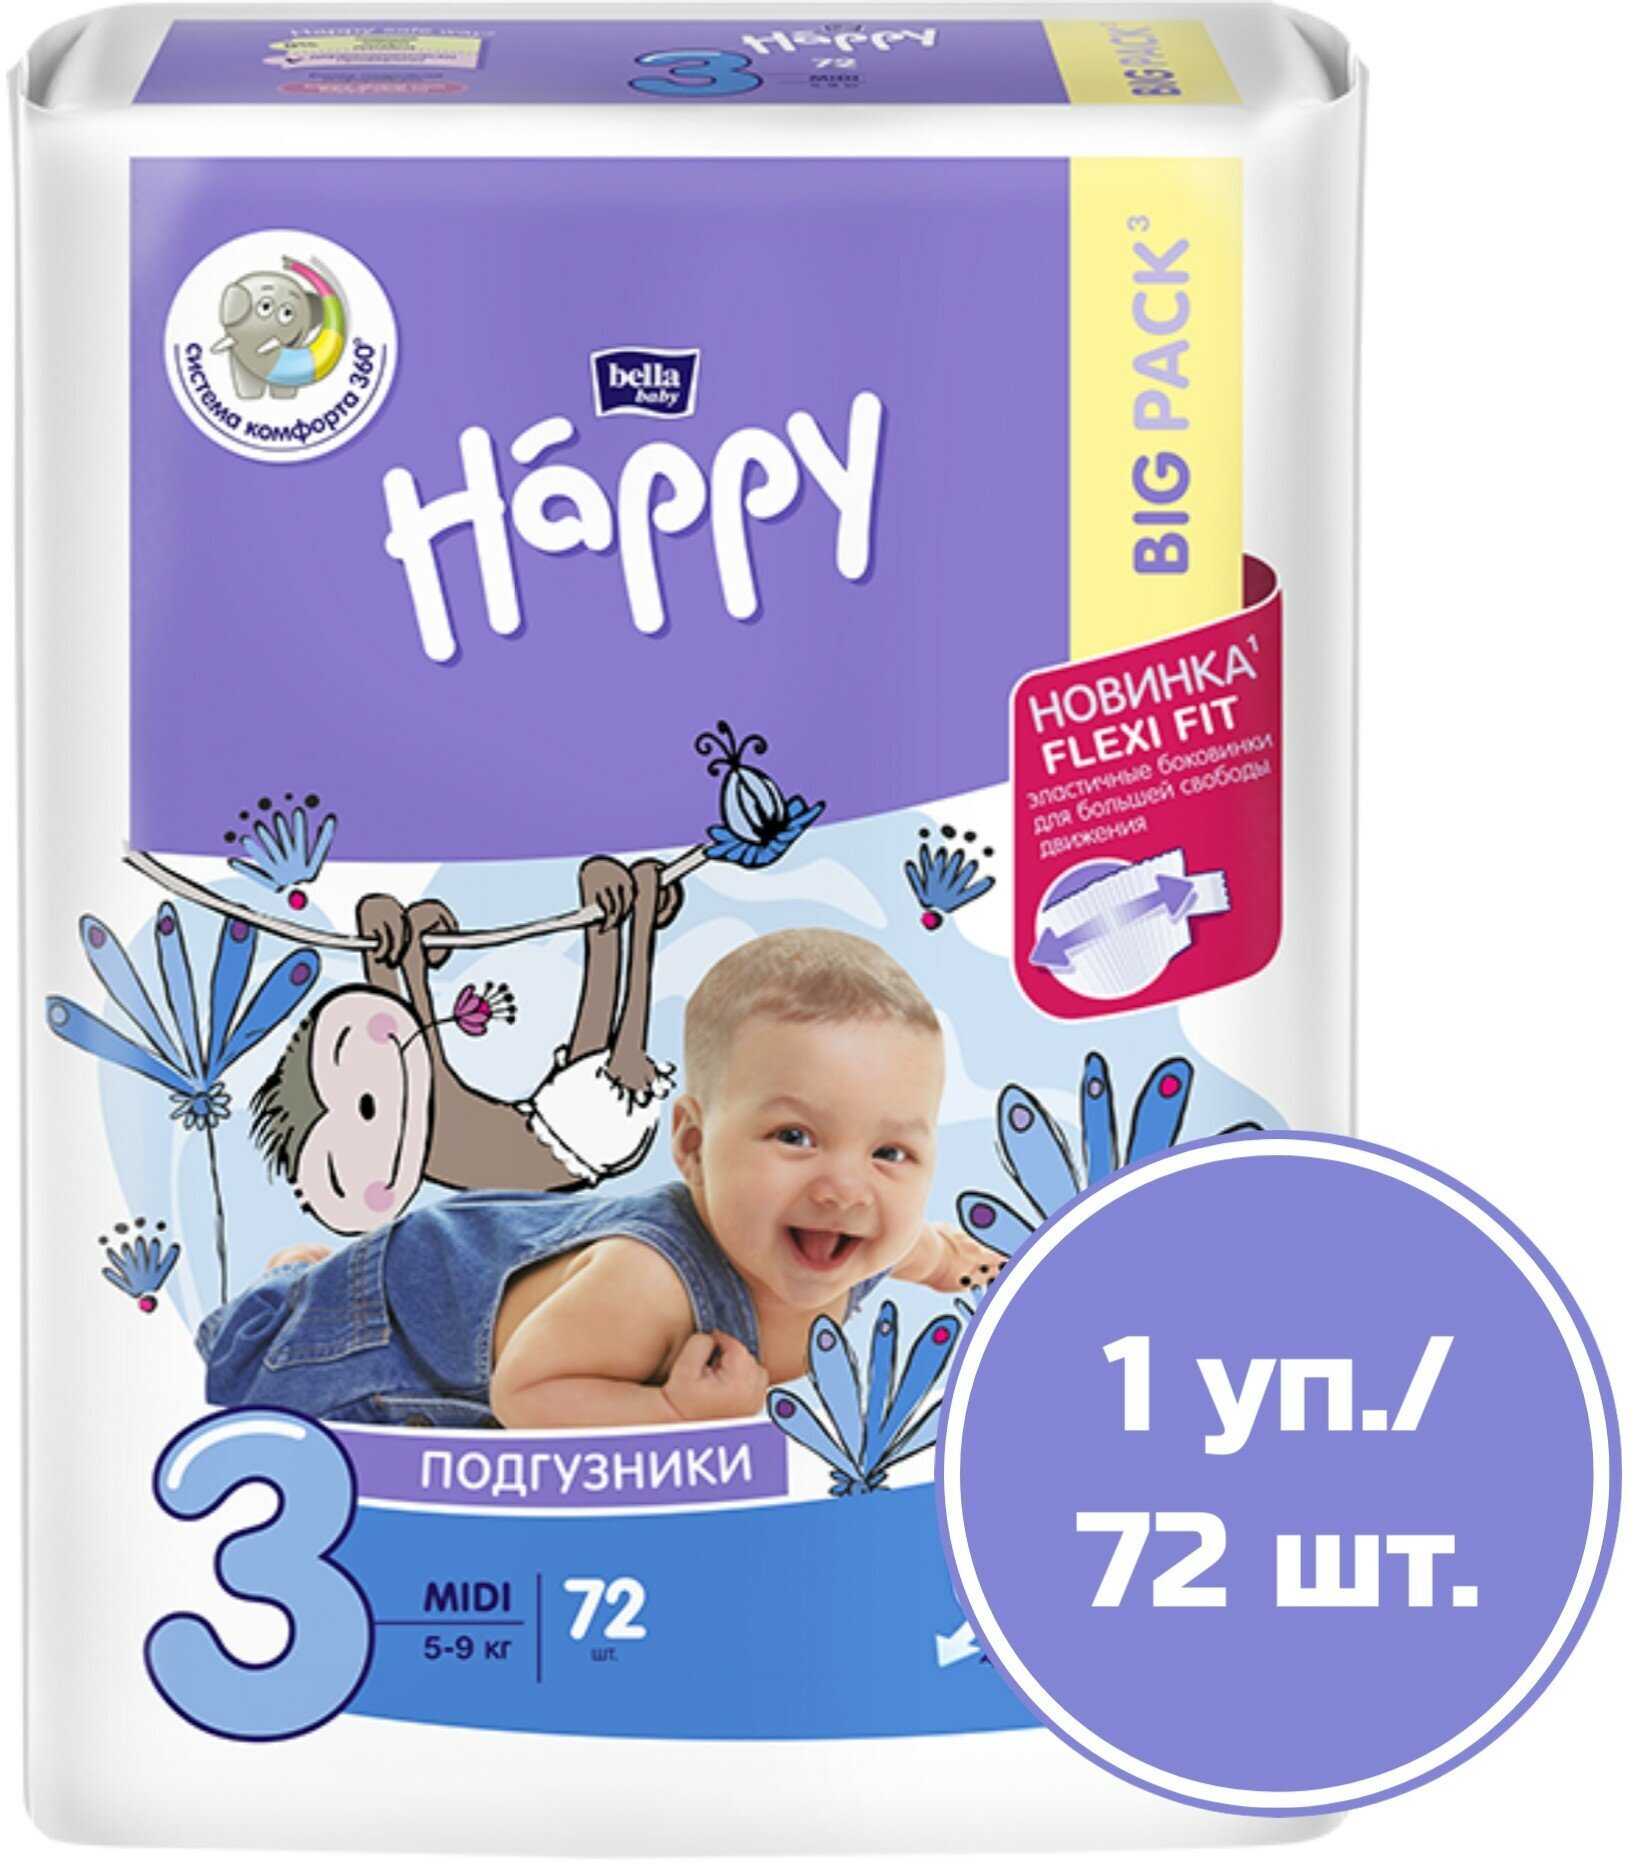 bella baby Happy Подгузники детские "bella baby Happy" Midi, 72 шт./уп., вес 5-9 кг